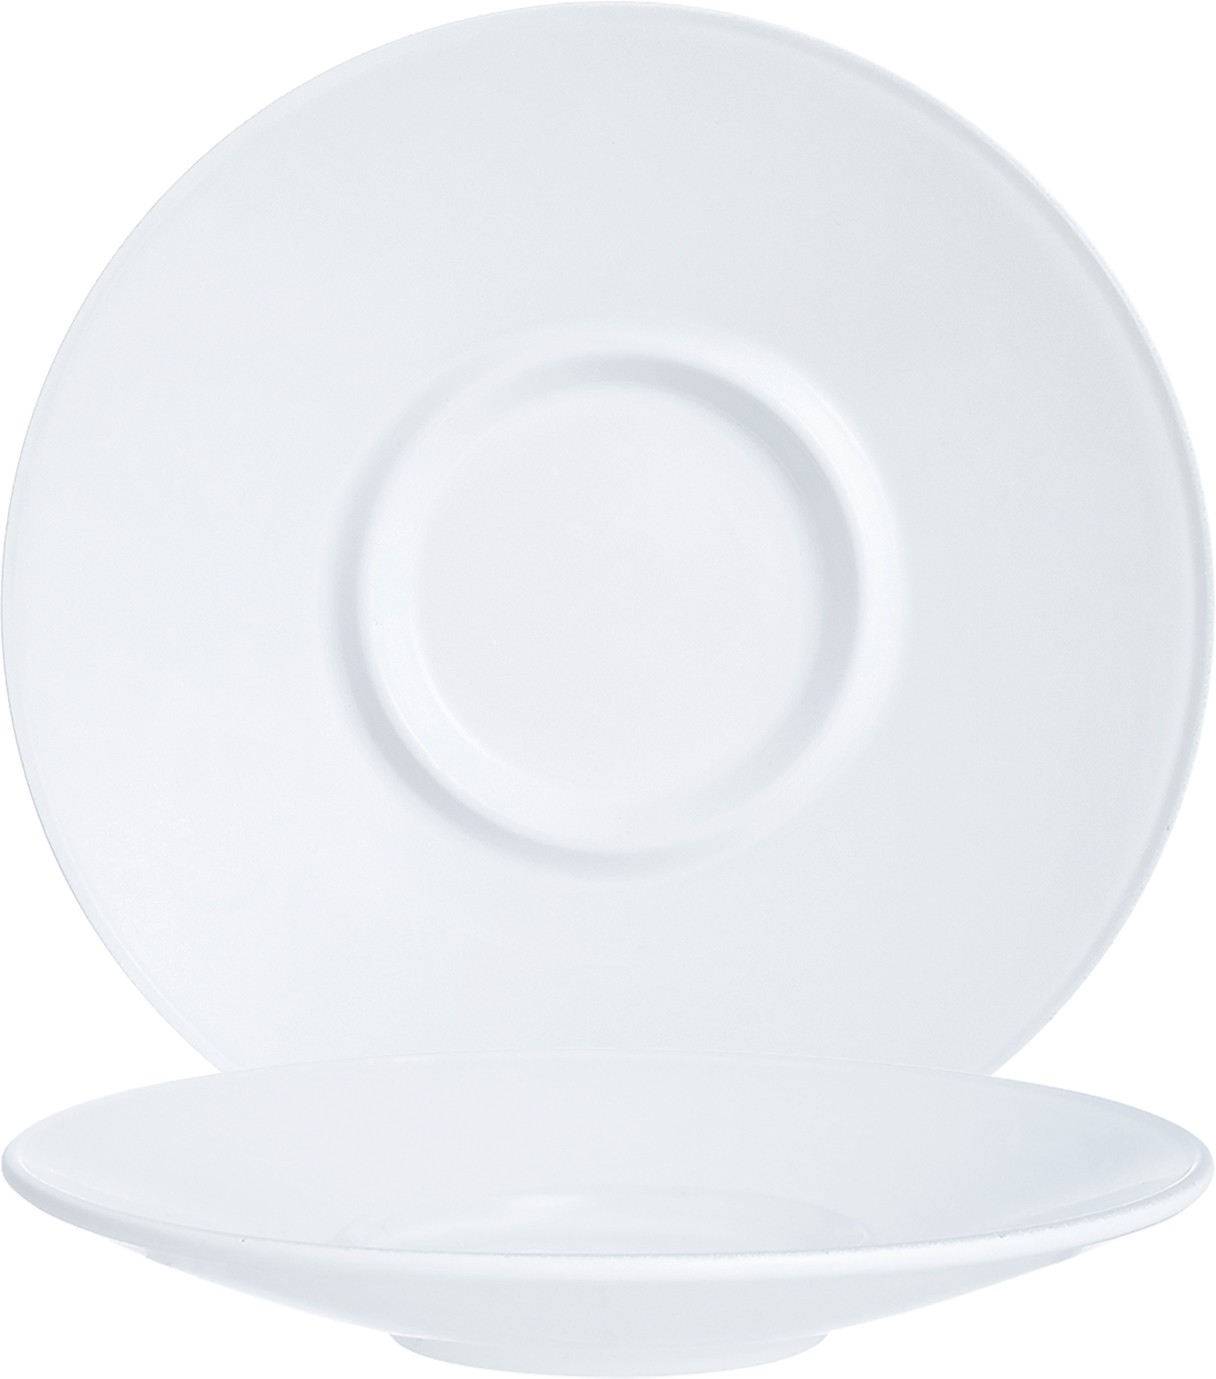 Arcoroc Intensity White Baril Untertasse 15,4 cm, in der farbe Weiß, aus Opal, Stapelbar, Mikrowellen- und Spülmaschinen geeignet